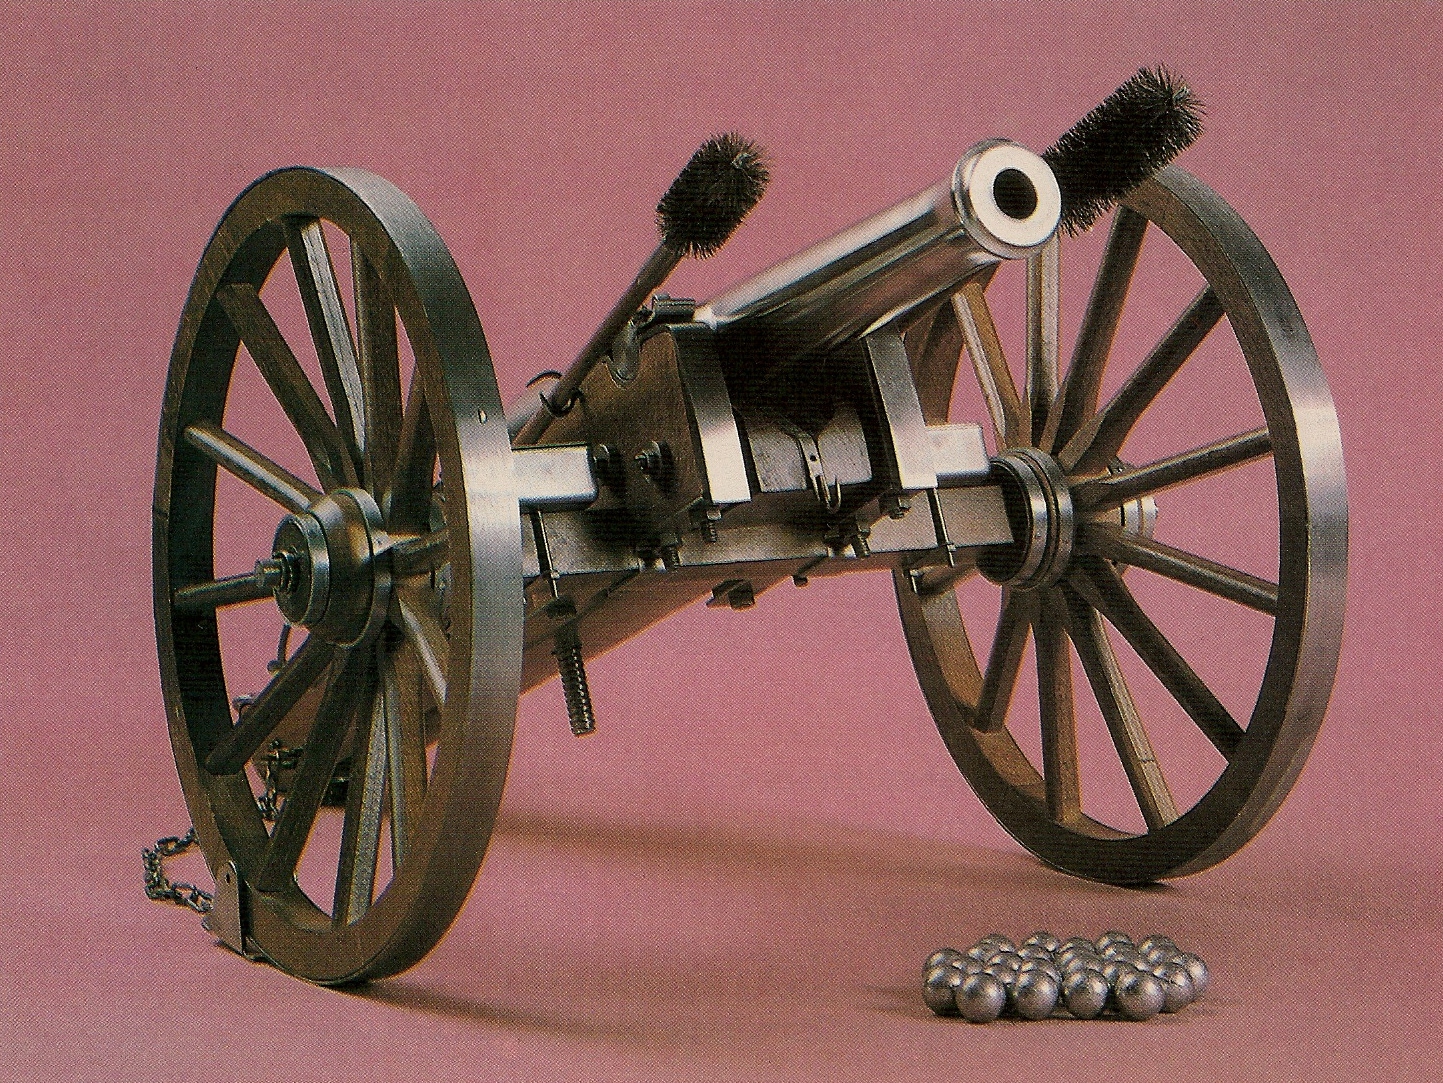 Le canon « Napoléon III » proposé en kit ou monté par la firme espagnole Dikar/Macris, devenue par la suite Ardesa, est une réplique dotée d’un tube massif usiné dans un bloc d’acier et de très belles roues cerclées.